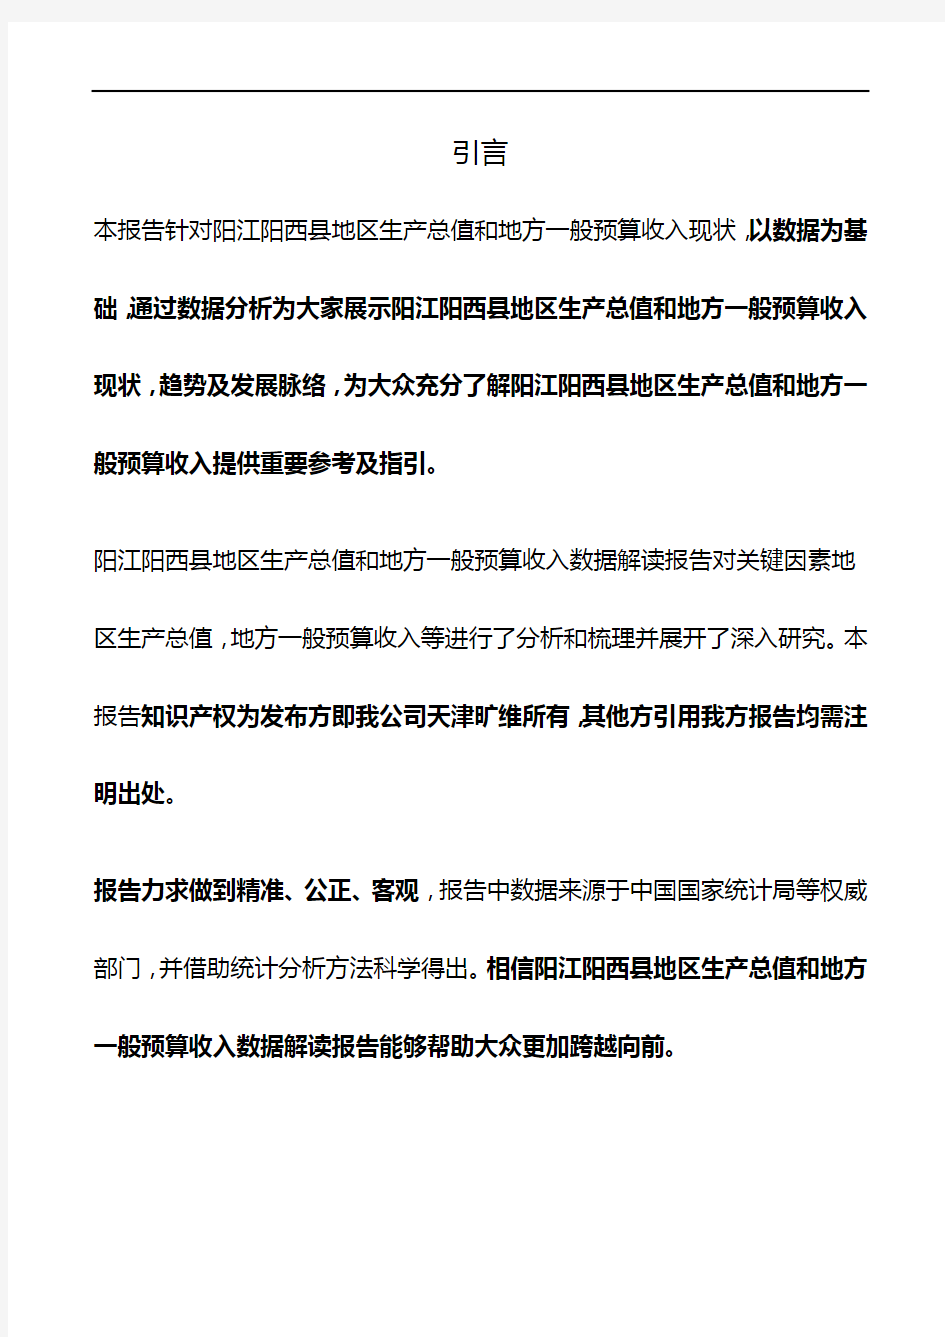 广东省阳江阳西县地区生产总值和地方一般预算收入3年数据解读报告2020版